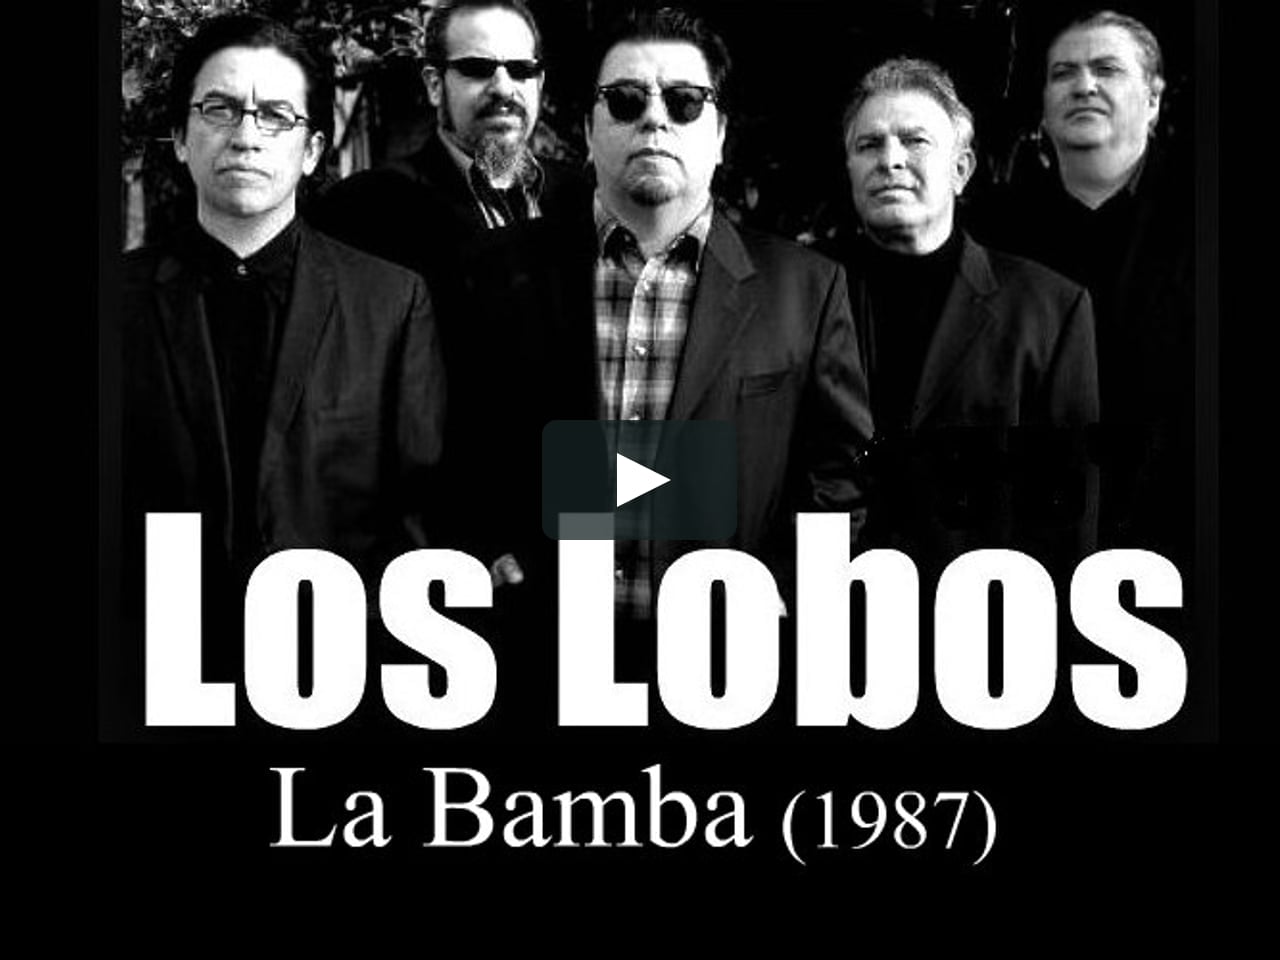 Los lobos la bamba. Группа los Lobos. "Los Lobos" && ( исполнитель | группа | музыка | Music | Band | artist ) && (фото | photo). Los Lobos группа Википедия.